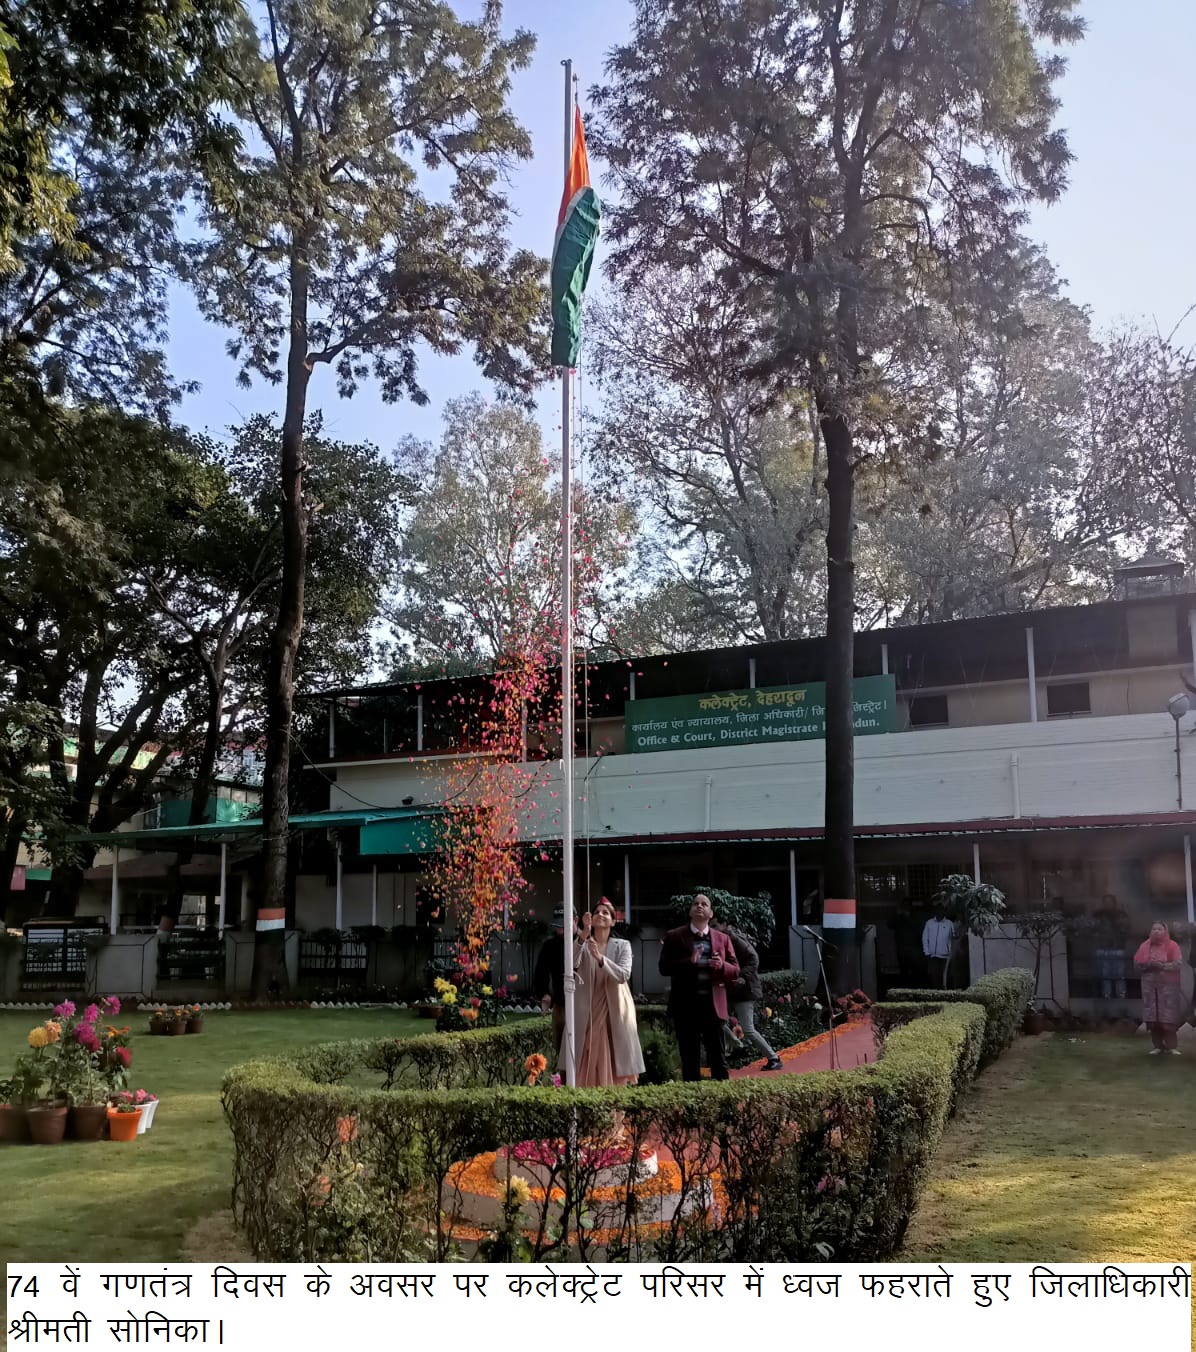 देहरादून DM ने गणतंत्र दिवस के अवसर पर कलेक्ट्रेट परिसर में फहराया ध्वज, अधिकारियों/कर्मचारियों को दी शुभकामनाएं।